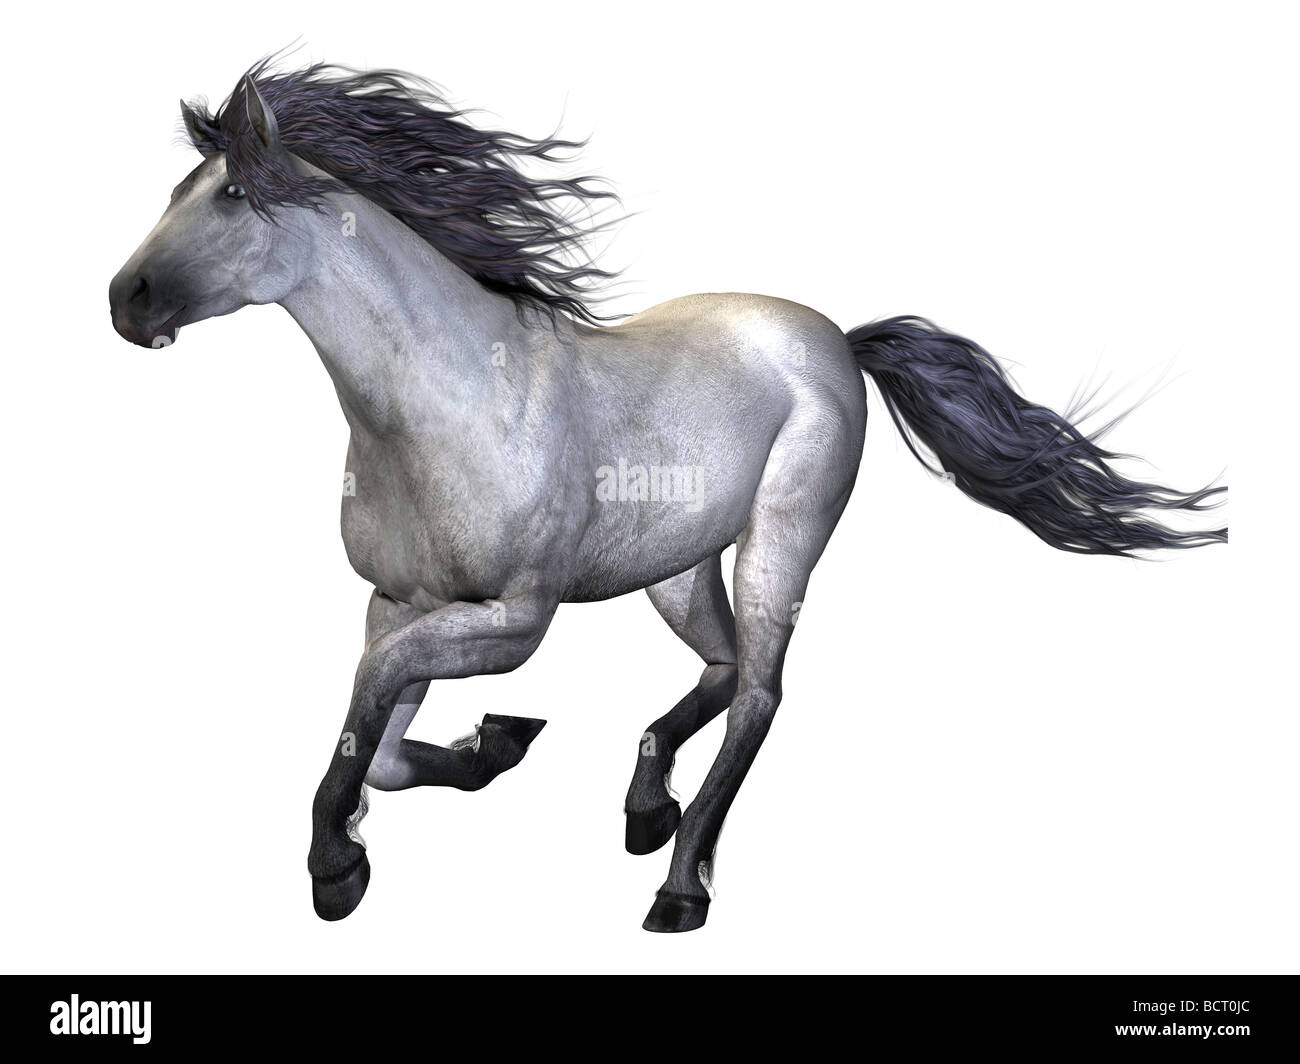 A beautiful white stallion galloping. Stock Photo